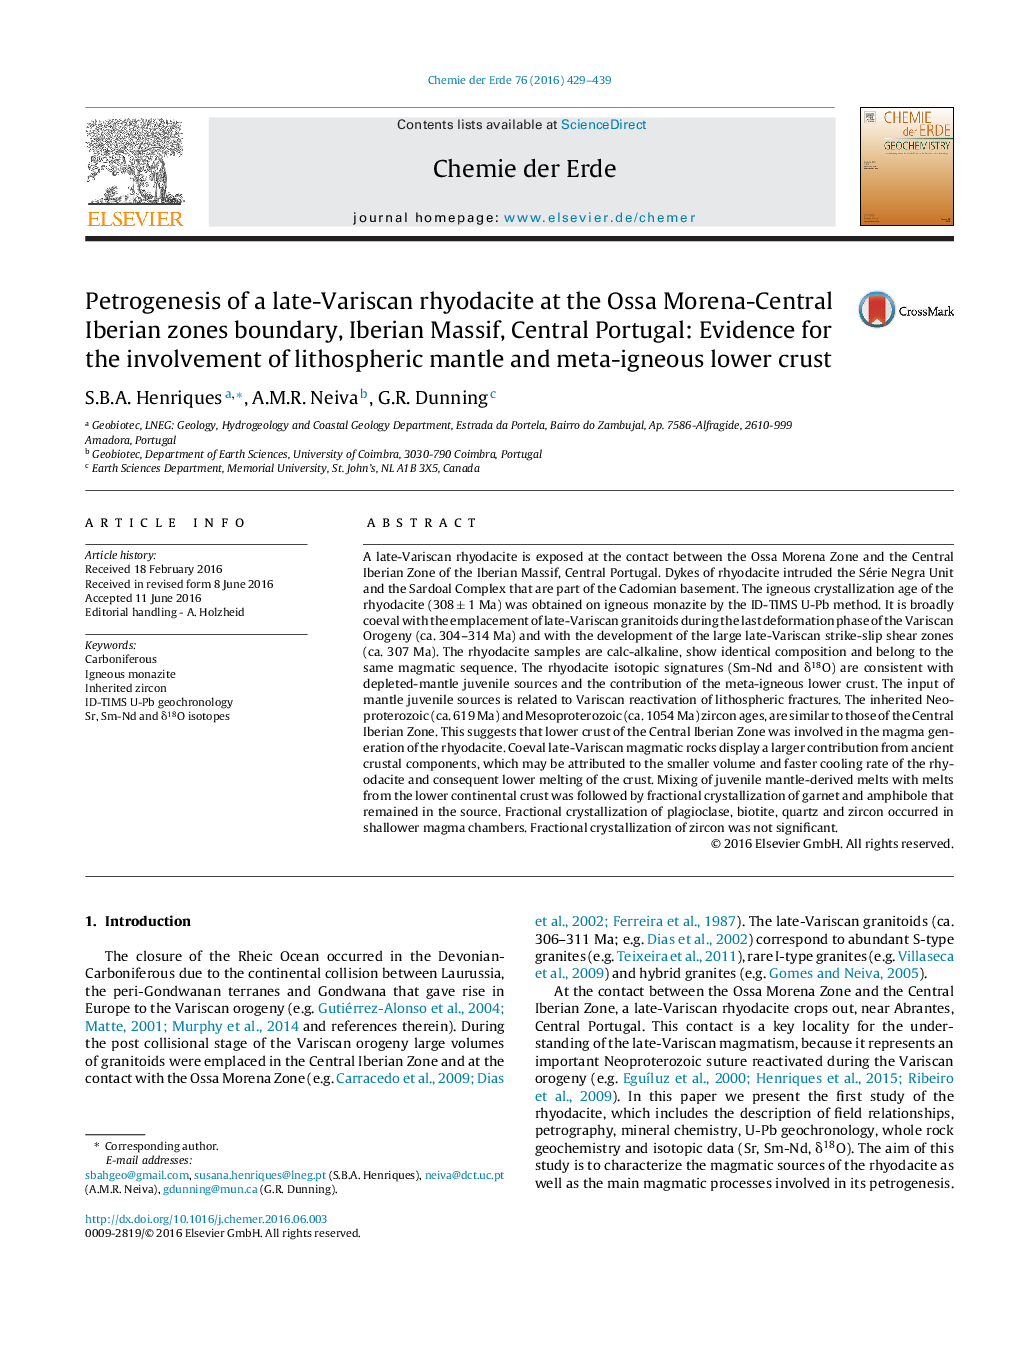 پتروژنز یک ریدوکسیت دیر واریسکان در مرزهای اسهه مورا-مرکزی اریجین، ماسه ایبرین، پرتقال مرکزی: شواهد برای دخالت گوشته لیتوسفر و پوسته زیرزندگی زیرزمینی 